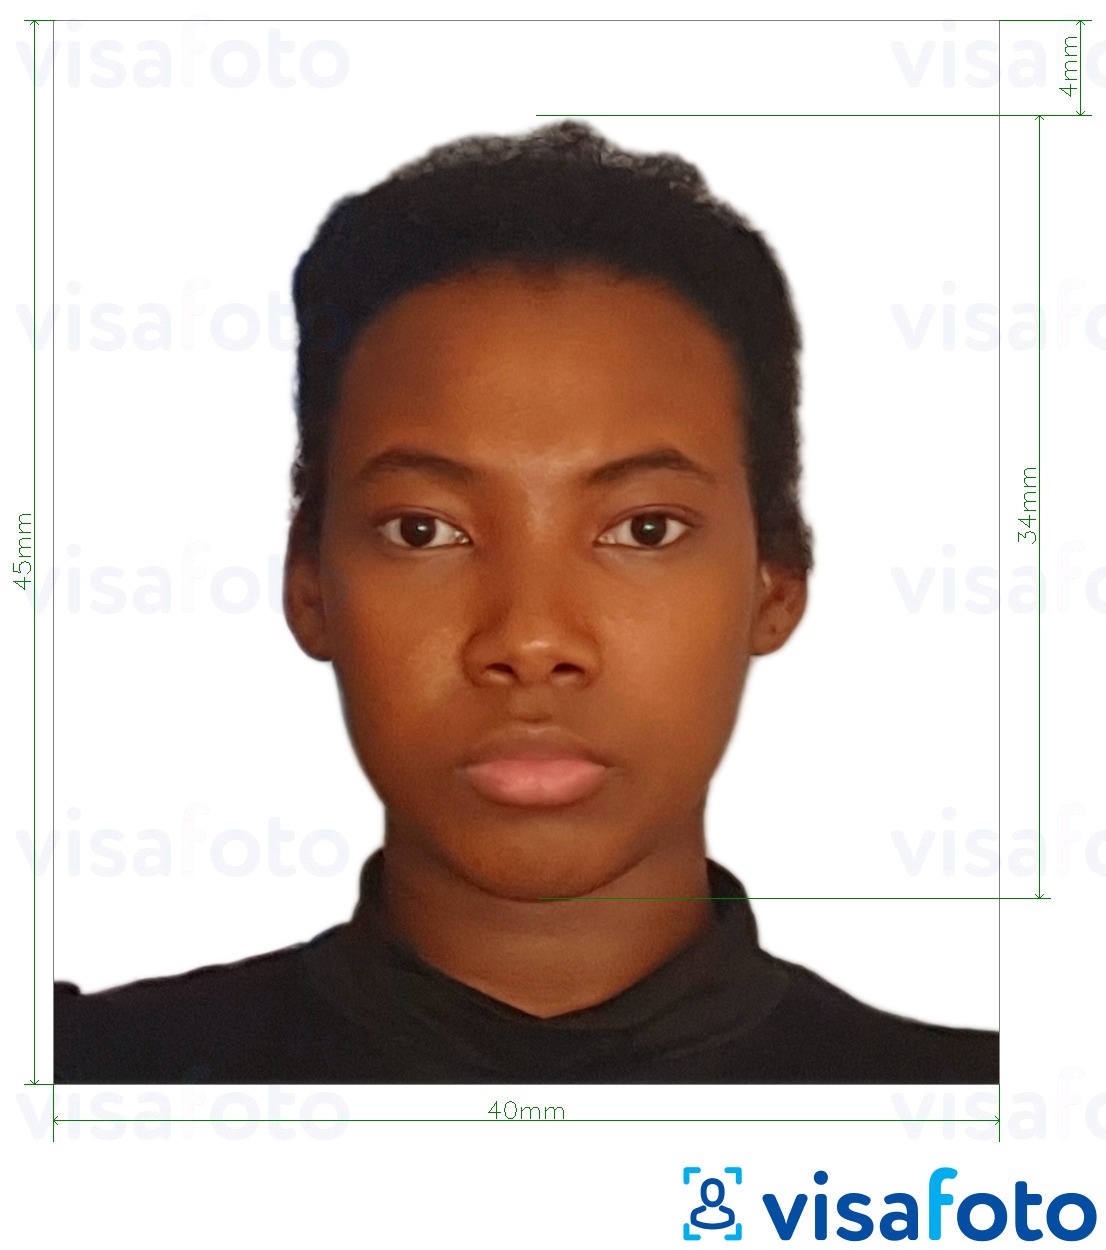 Esempio di foto per Passaporto Tanzania 40x45 mm (4x4,5 cm) con specifiche delle dimensioni esatte